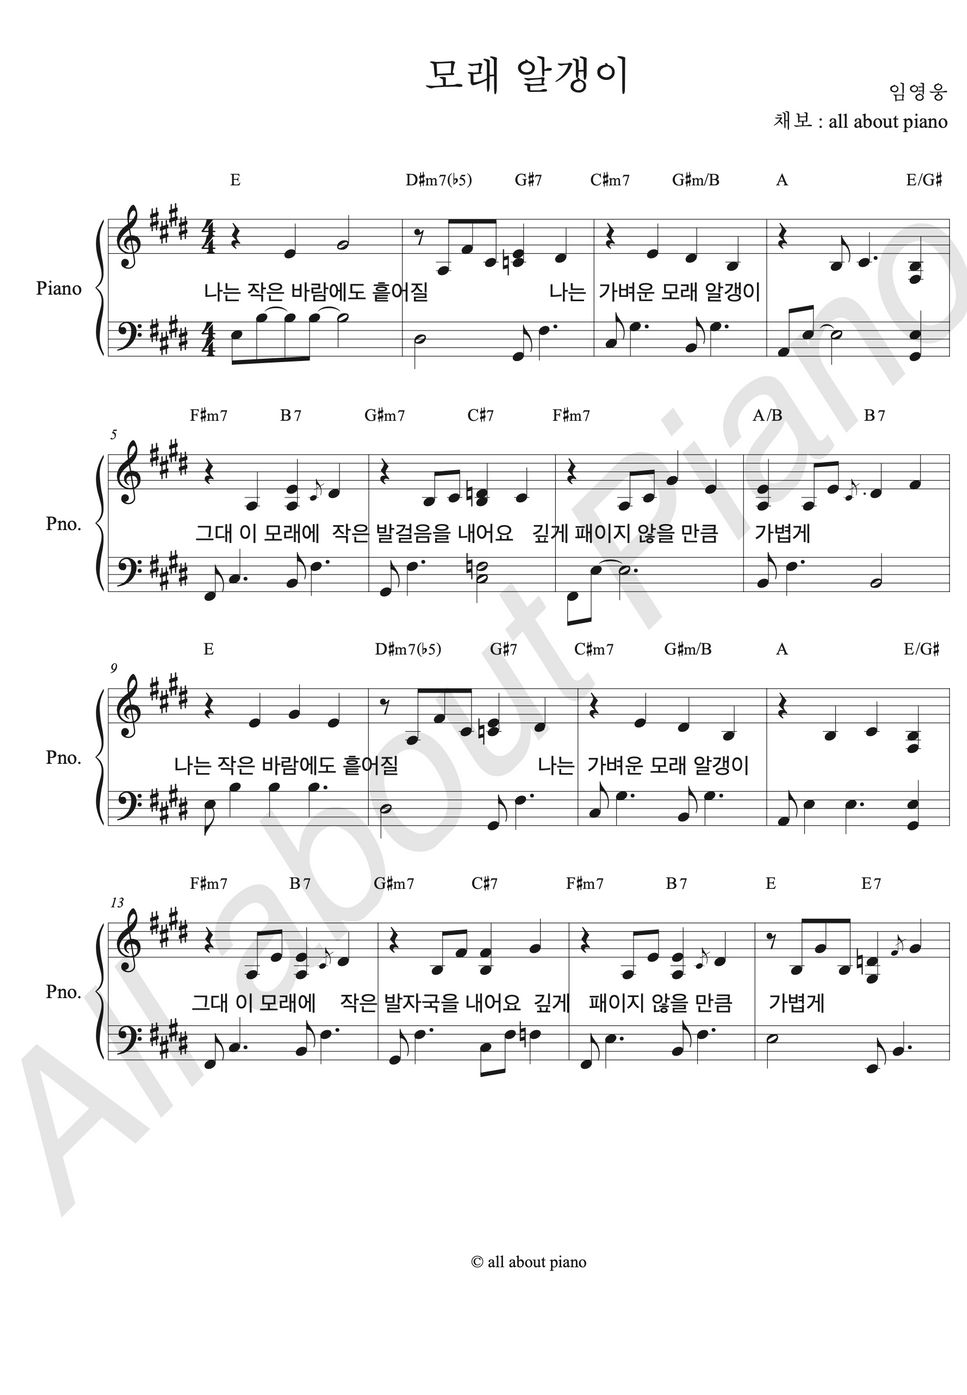 임영웅 - 모래 알갱이 (피아노 반주) by all about piano